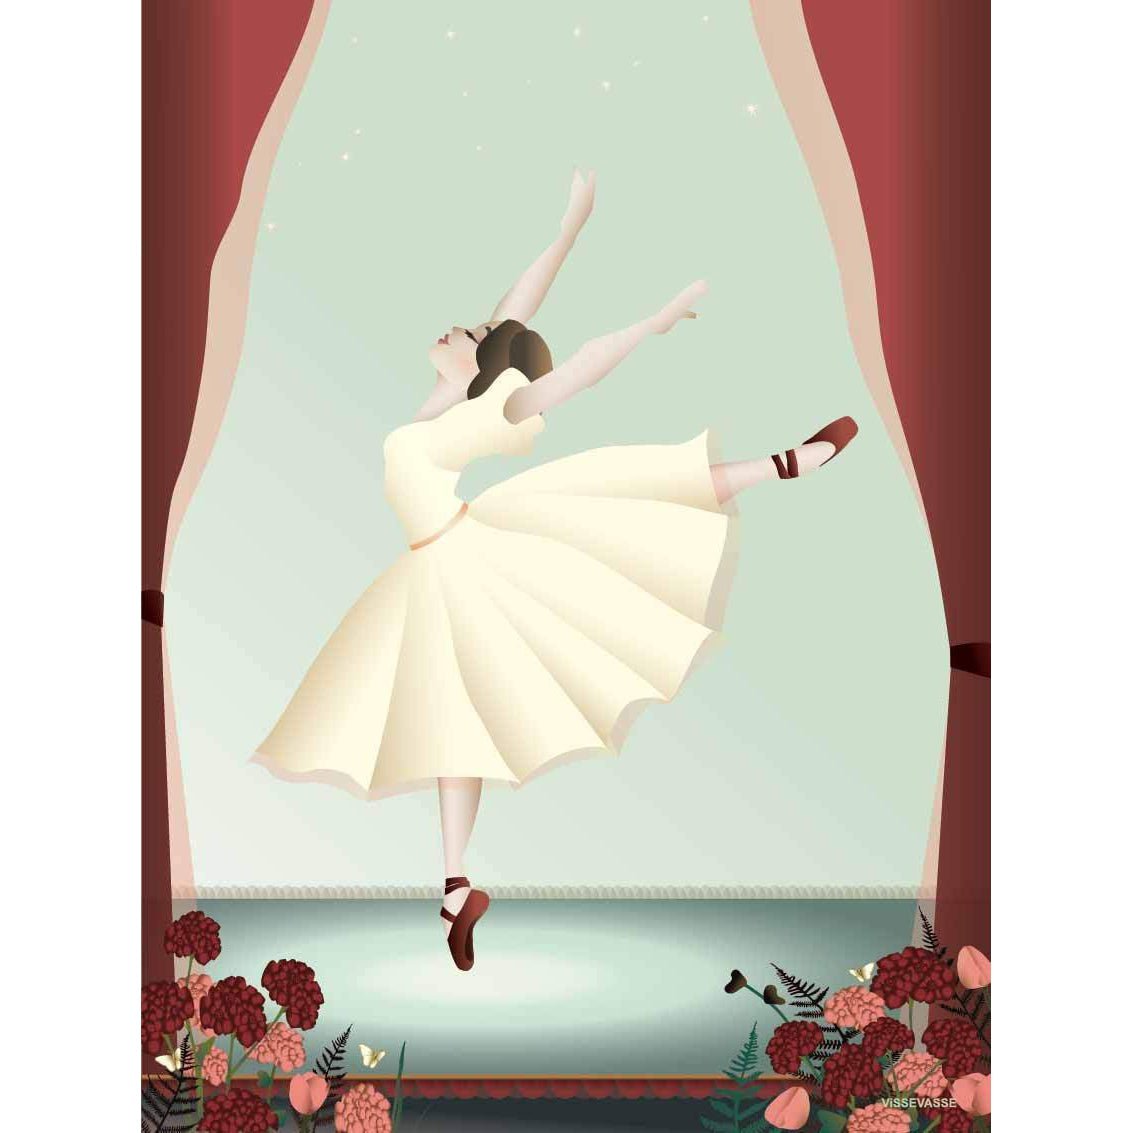 Plakat Vissevasse Ballerina, 15 x 21 cm